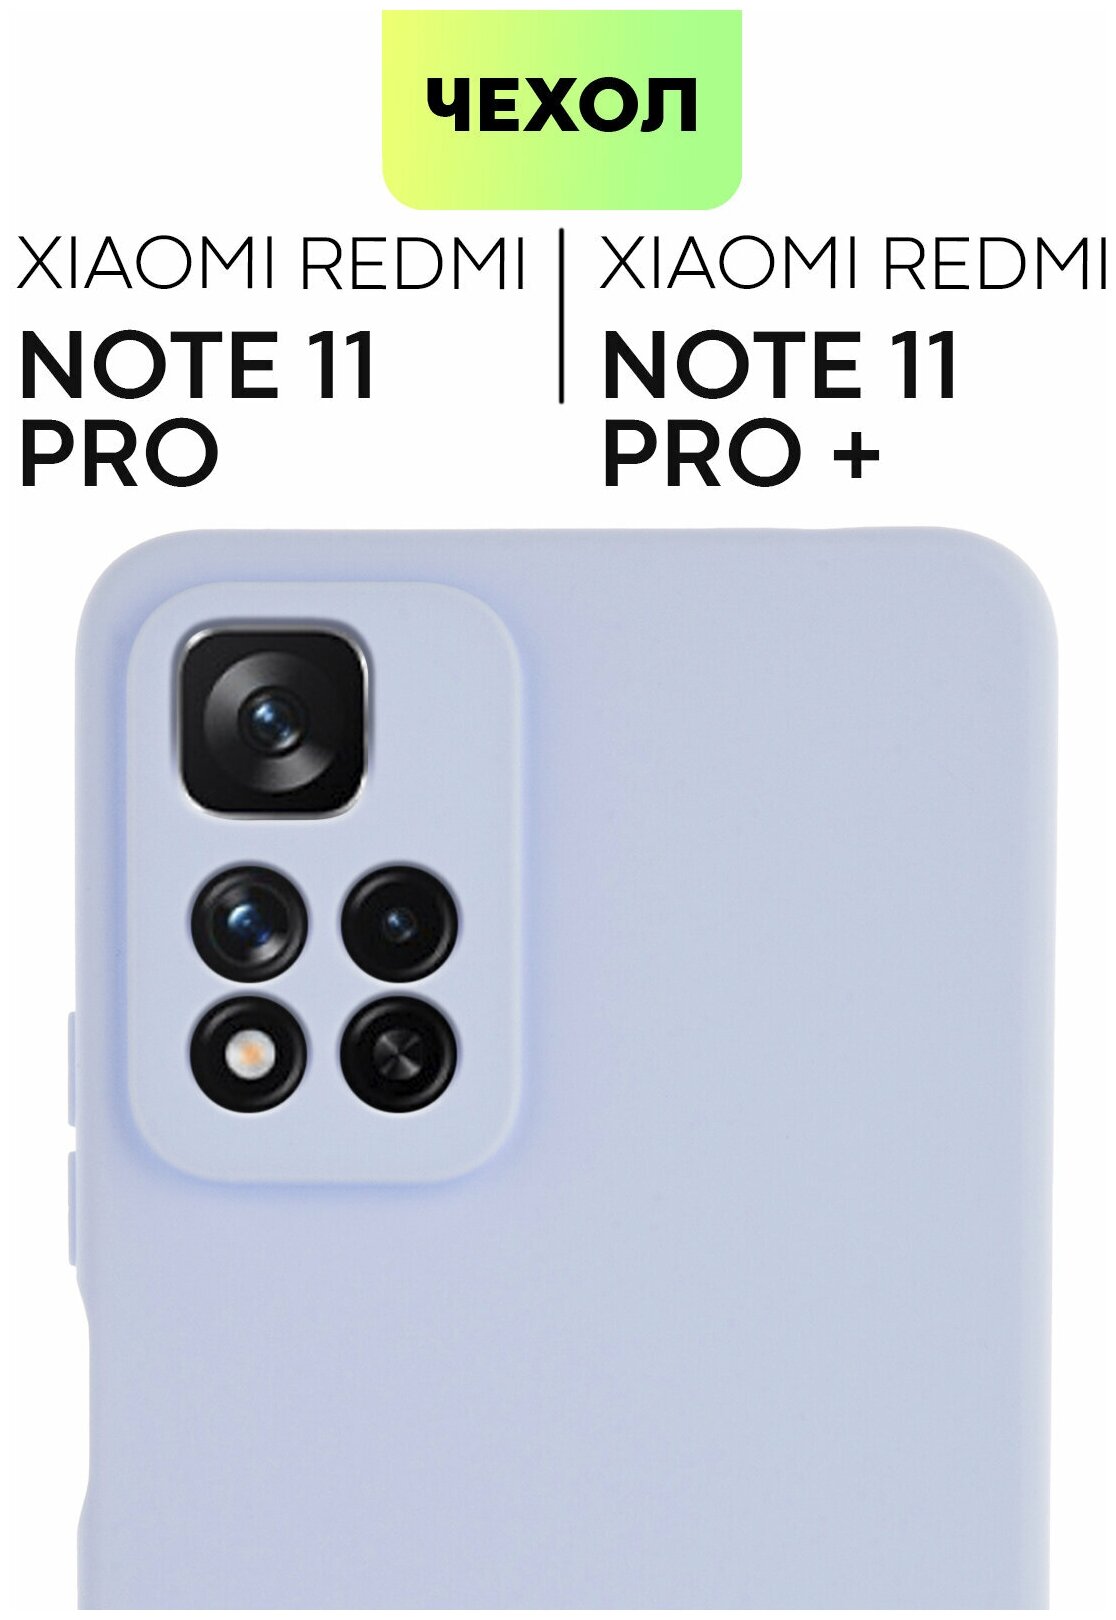 Чехол для Xiaomi Redmi Note 11 Pro 5G, Note Pro+ (Редми Ноут 11 Про, Про+), тонкий, силиконовый чехол, матовое покрытие, защита камер, сиреневый